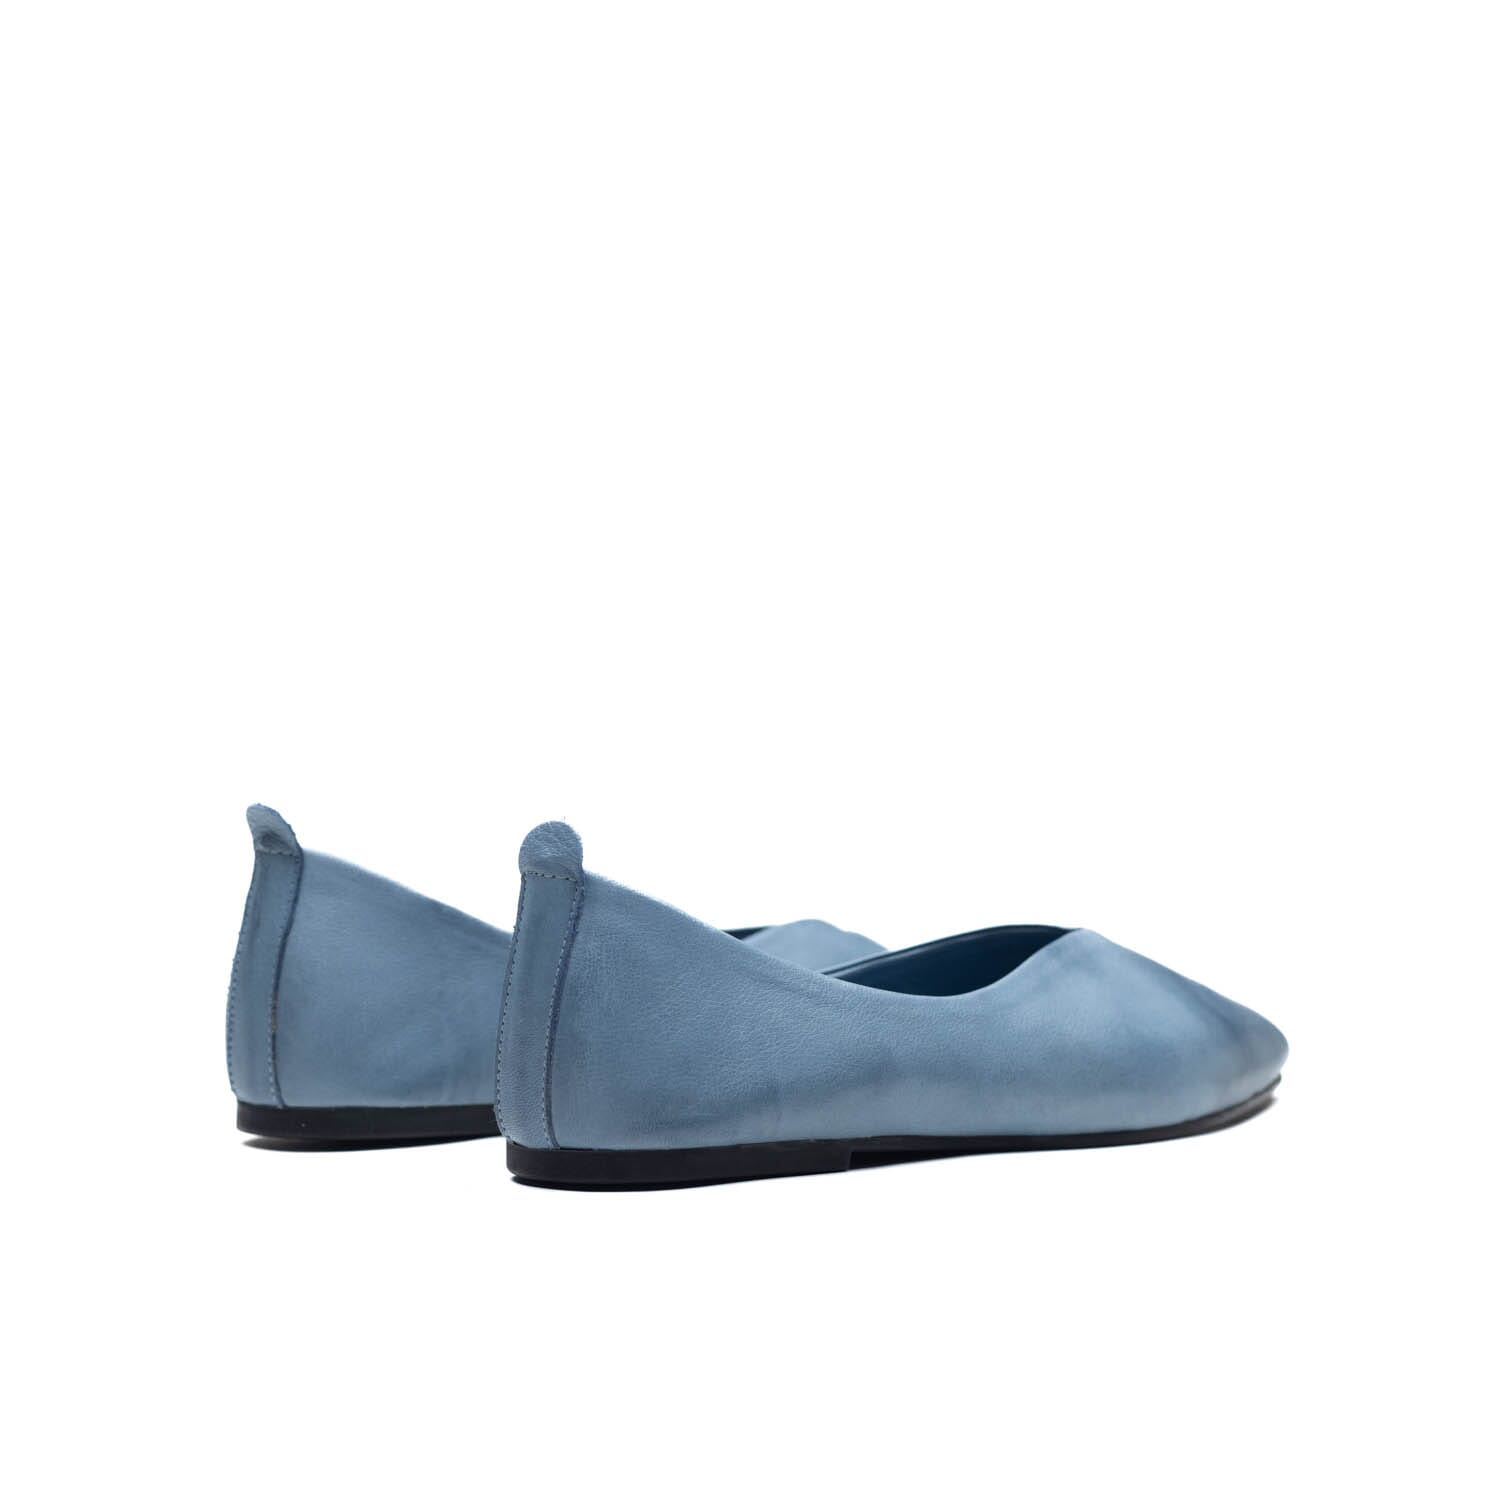 DIMATO – 093100 – BLUE – Perocili Shoes